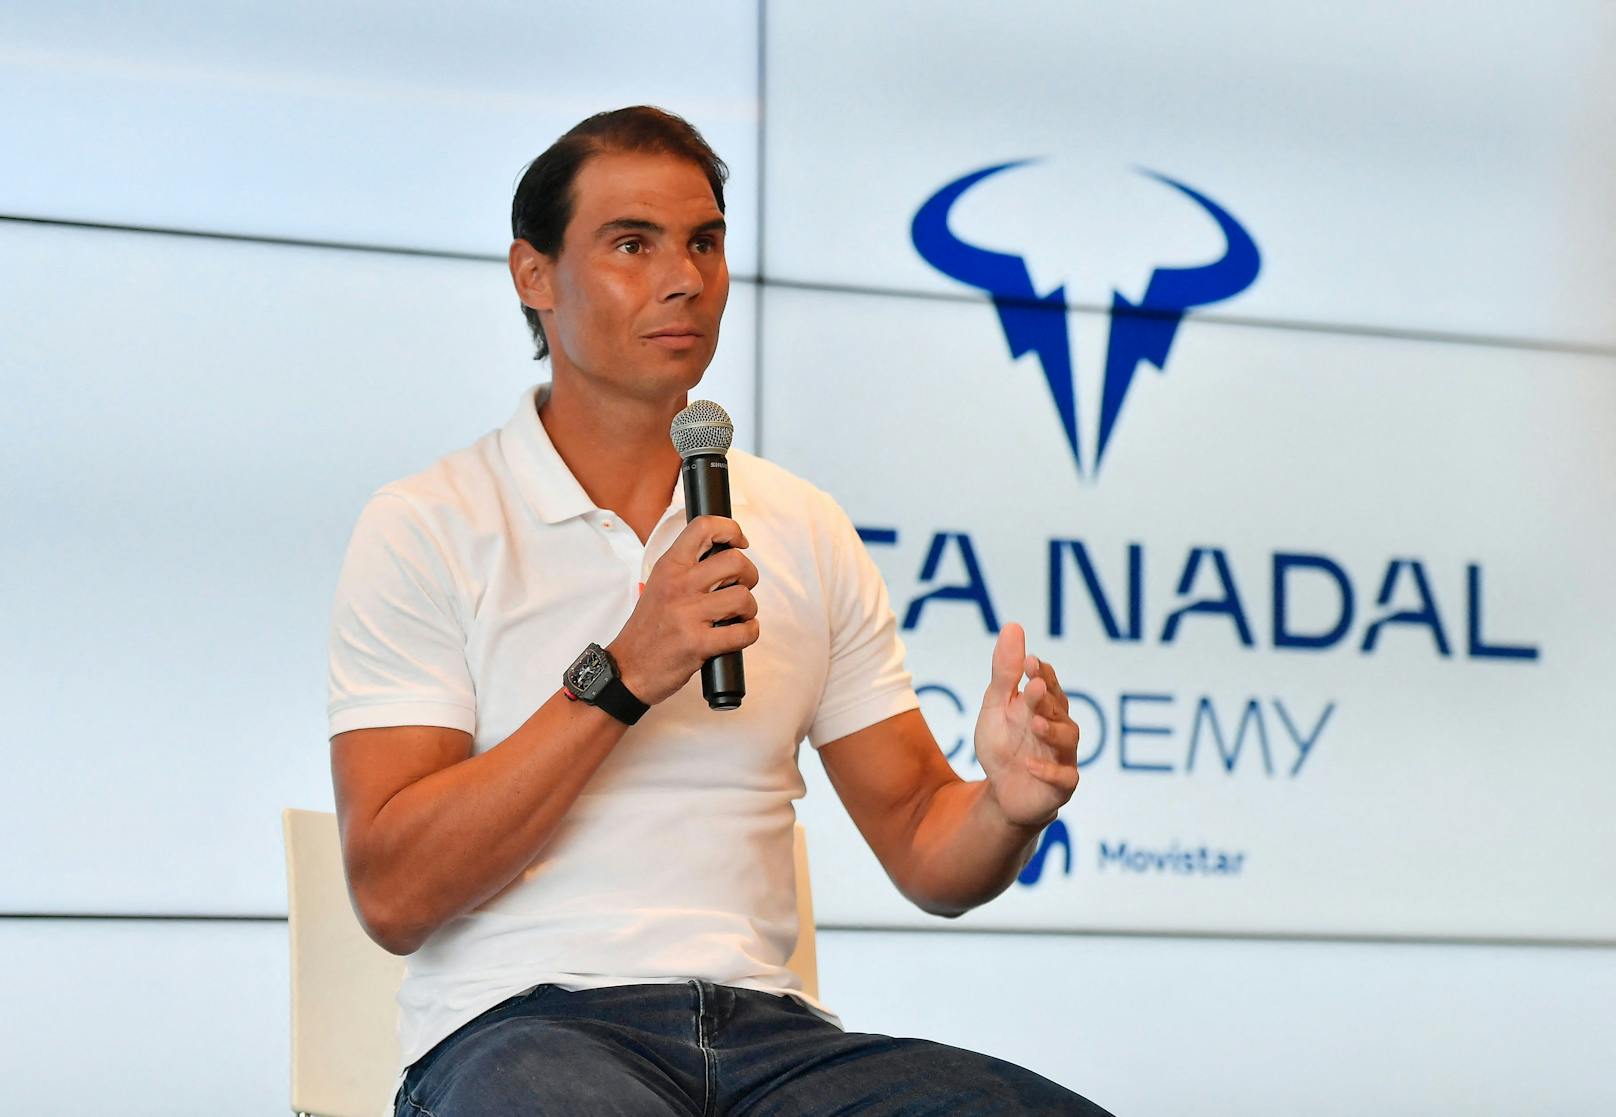 Sogar hinter Thiem – Tennis-Star Nadal im freien Fall